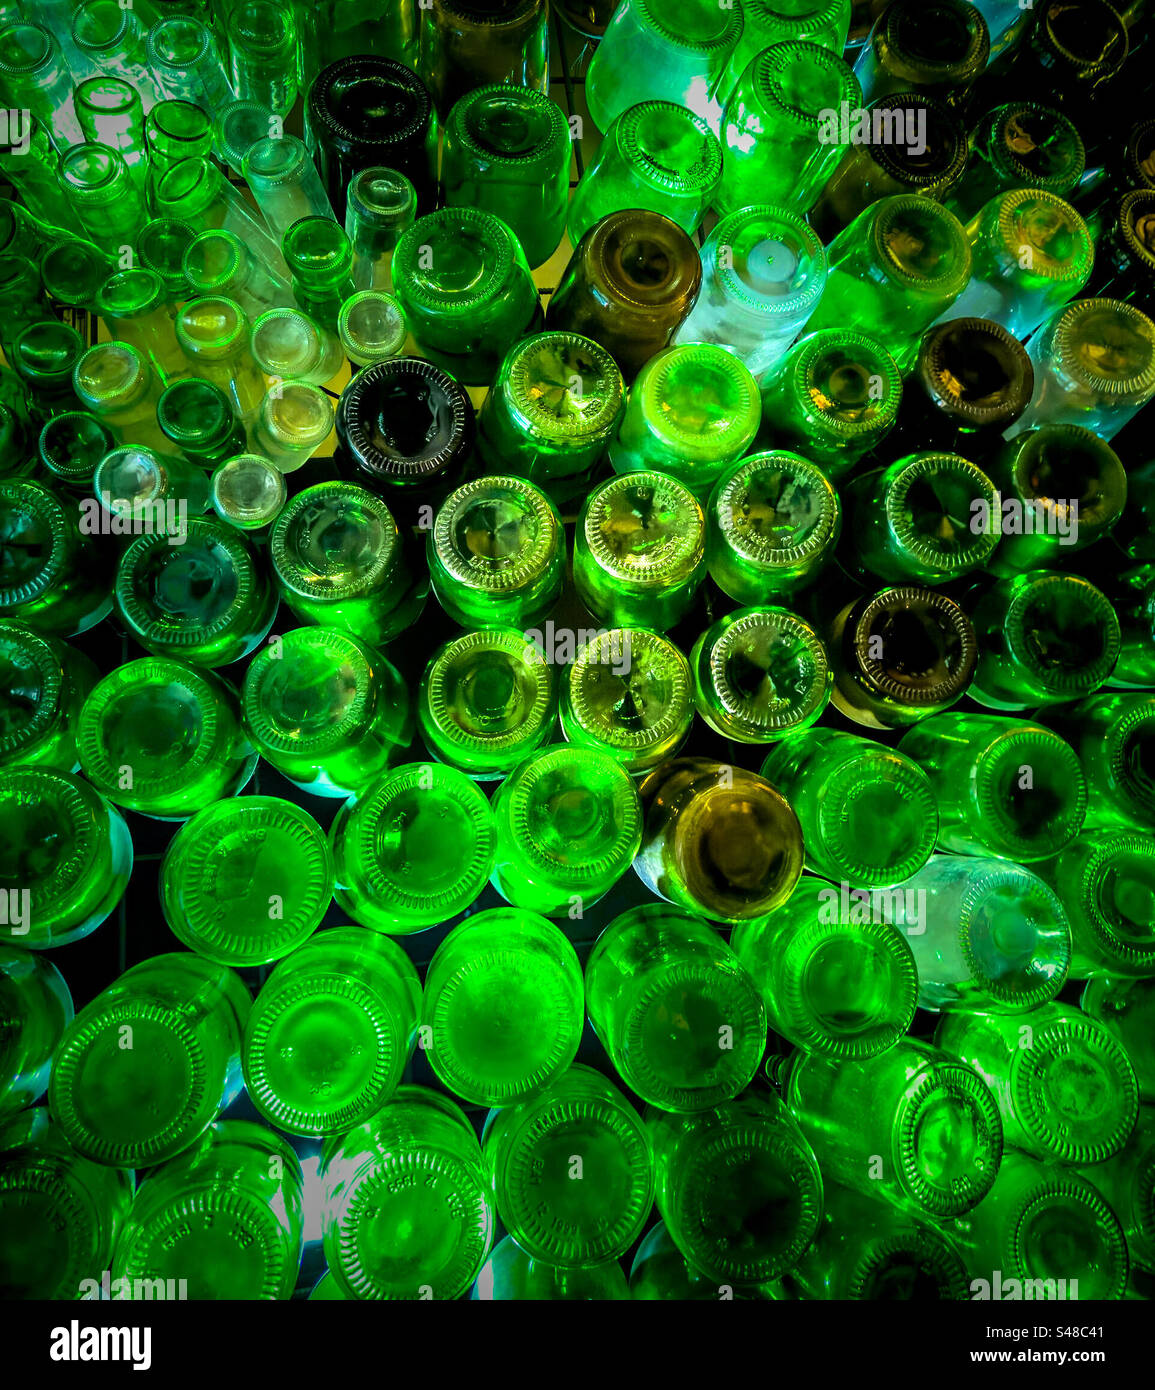 https://c8.alamy.com/compes/s48c41/variedad-de-botellas-de-vidrio-verde-reutilizadas-y-reutilizadas-para-la-decoracion-s48c41.jpg